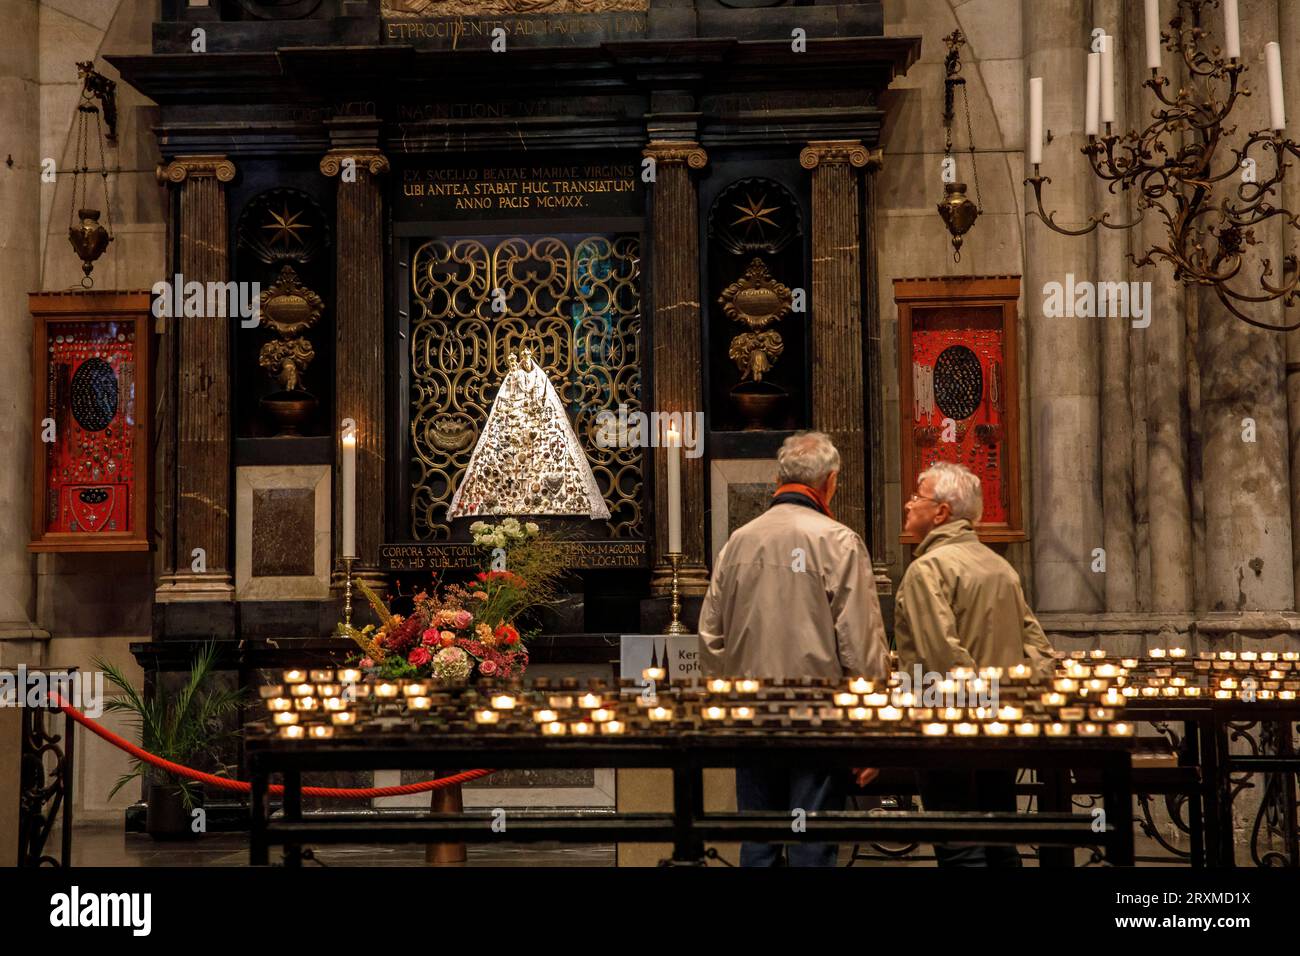 Altare della Madonna del gioiello nella Cattedrale, Colonia, Germania. Altar der Schmuckmadonna im Dom, Koeln, Deutschland. Foto Stock